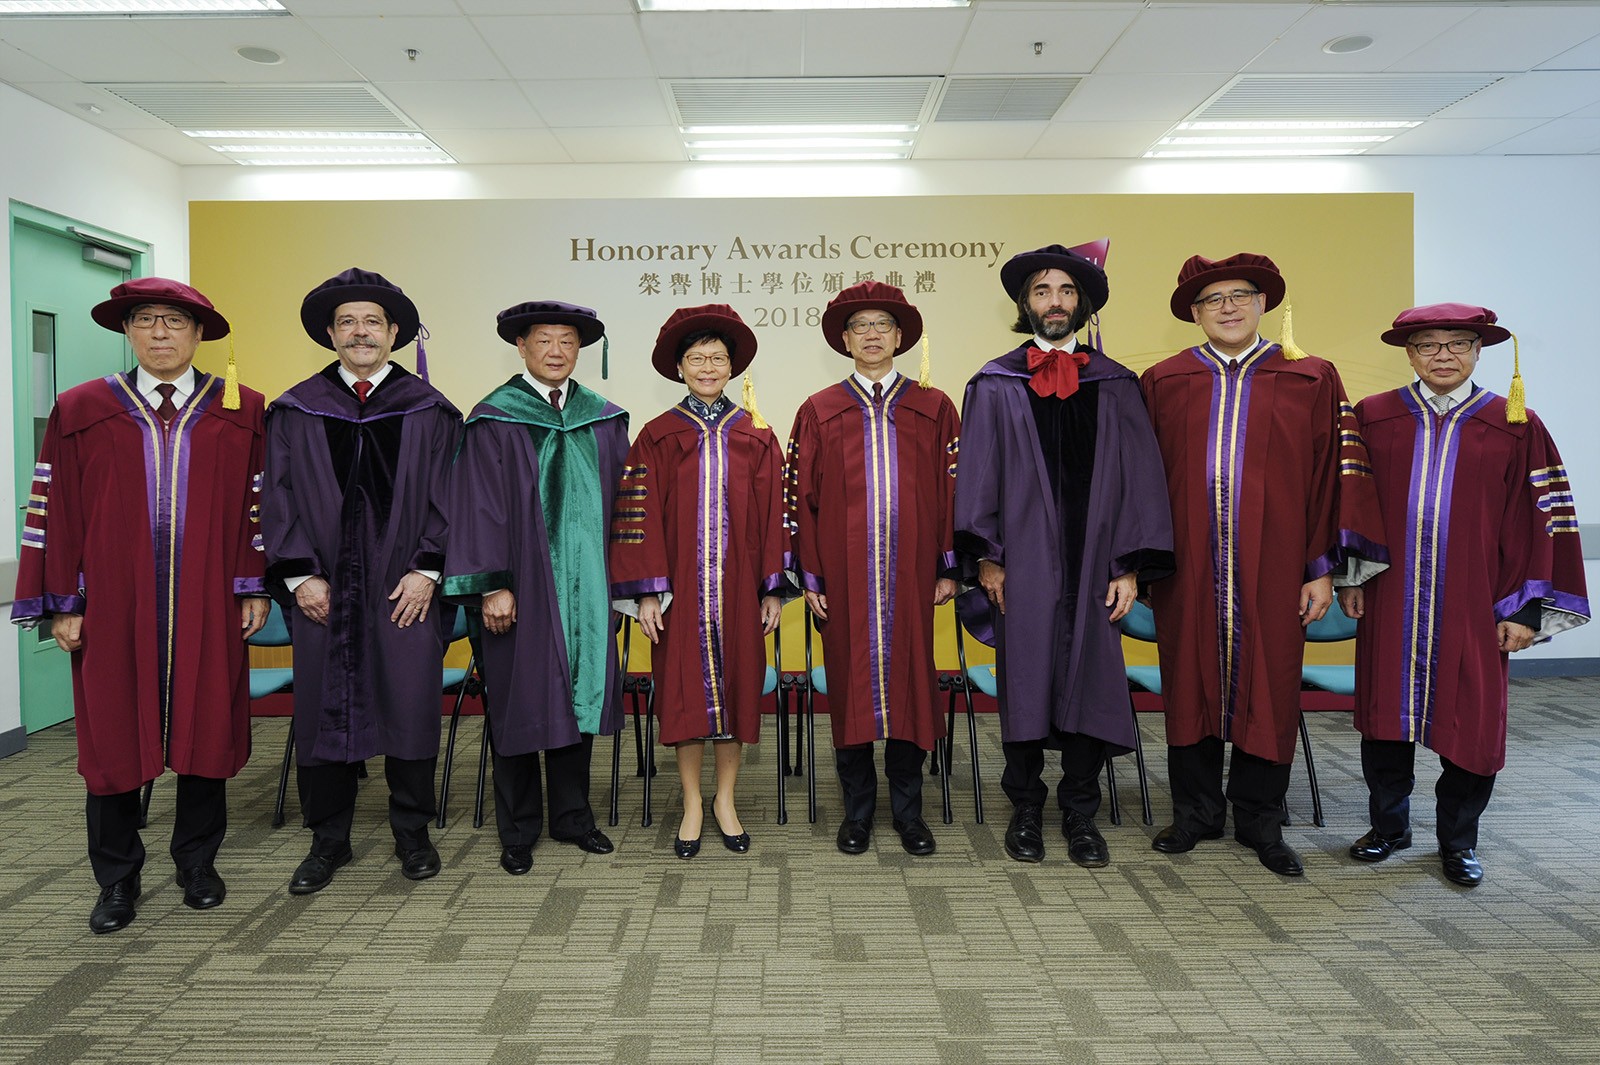 （左起）郭位教授、阿蘭‧阿斯佩教授、胡曉明博士、林鄭月娥女士、鍾瑞明博士、賽德里克‧維拉尼教授、黃嘉純先生、周永成先生。